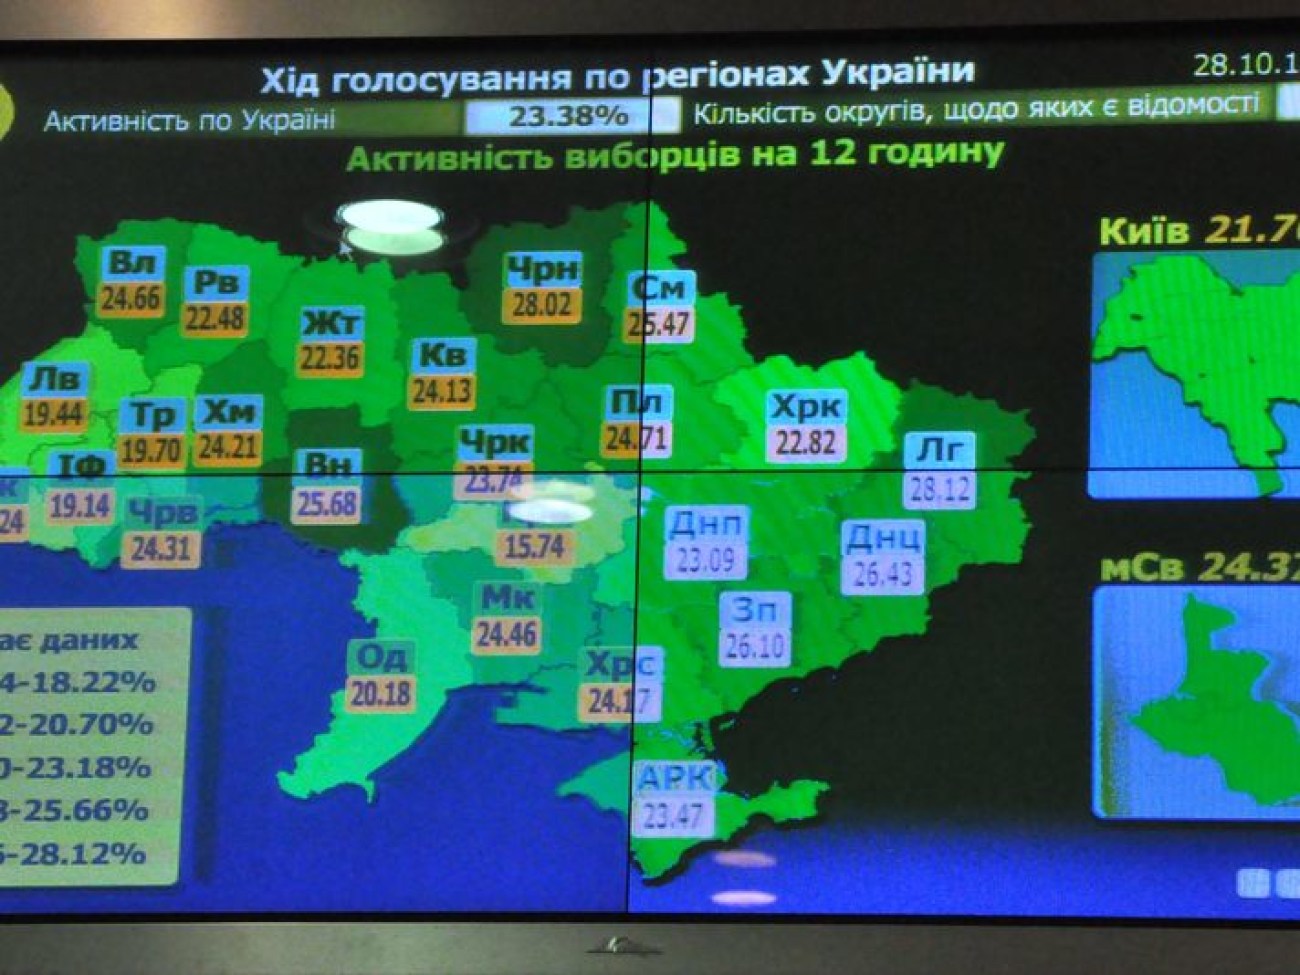 Первые exit poll на Украине: «Зеленый человечек» и «Шоколадный заяц» проходят дальше